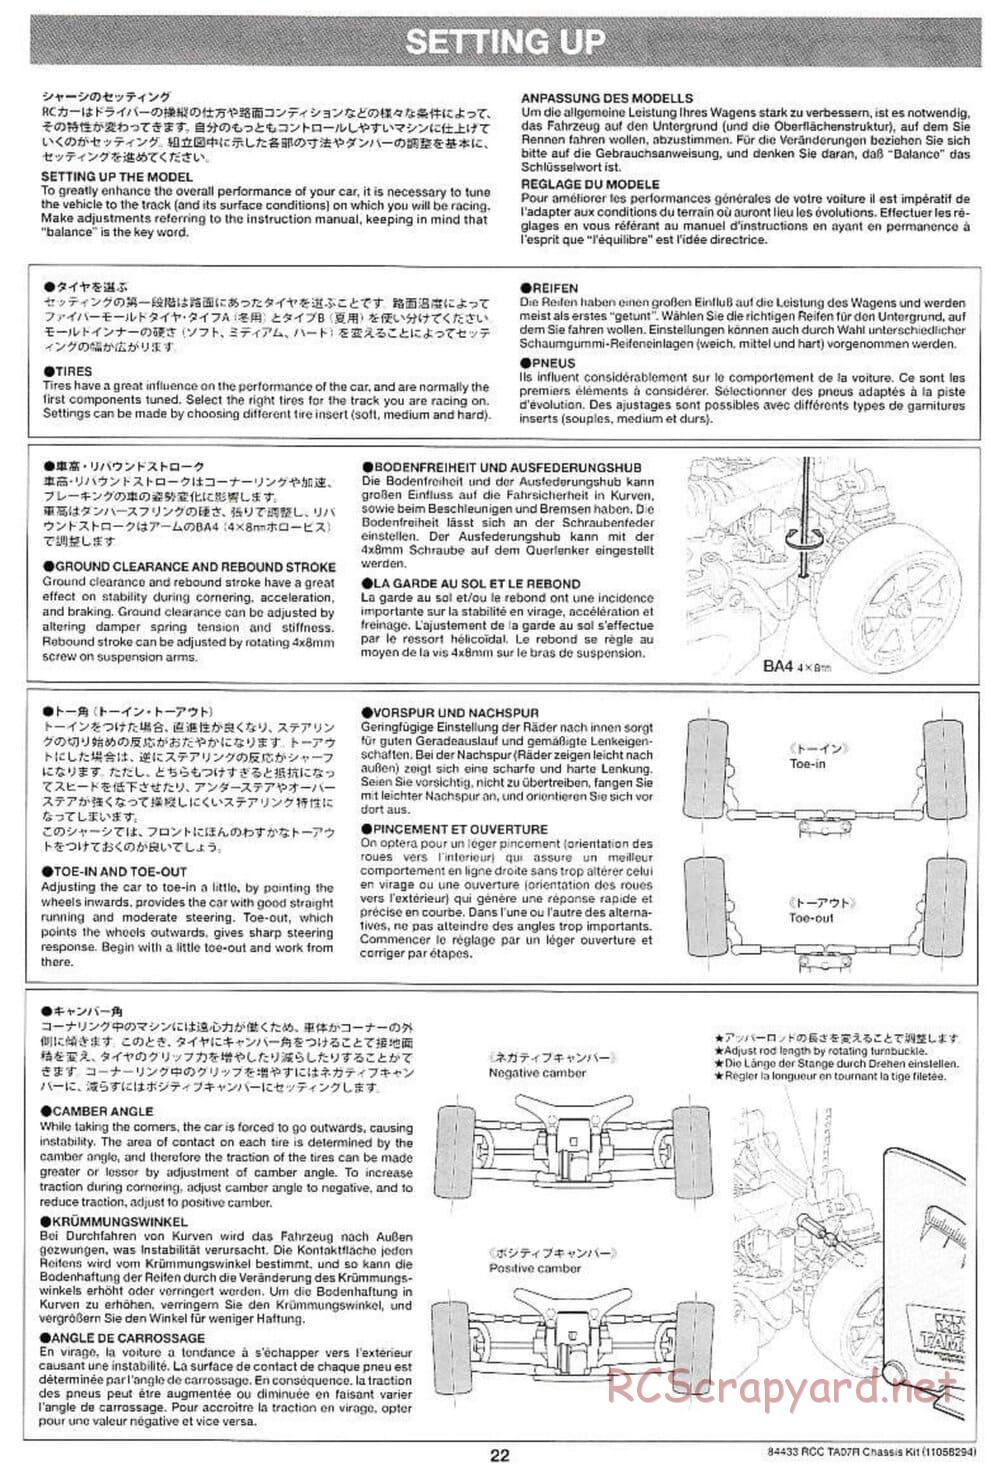 Tamiya - TA07 R Chassis - Manual - Page 22